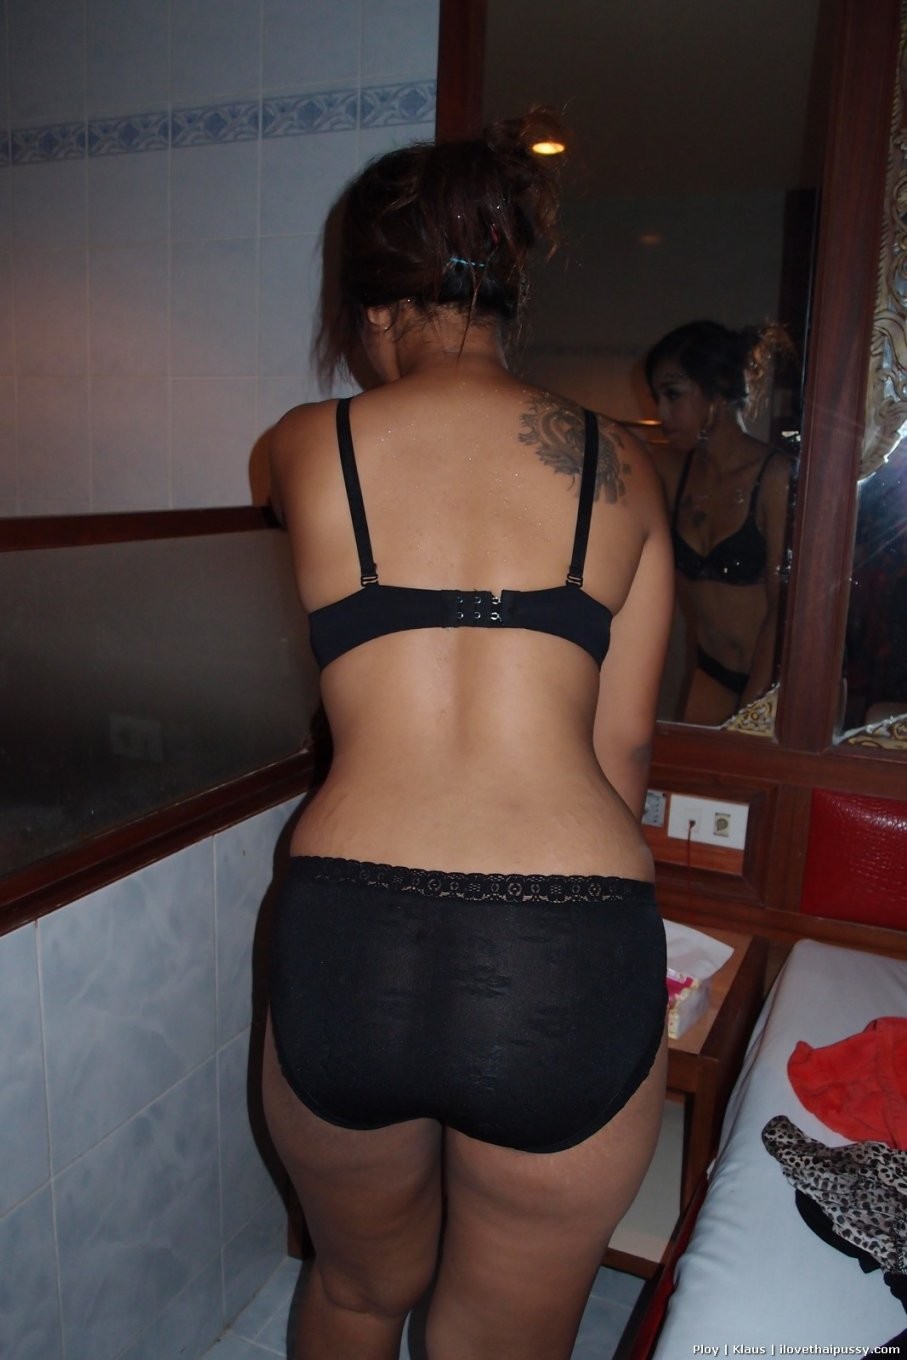 Big booty bangkok hooker penetrated no condom bareback for money asian whore
 #68460942